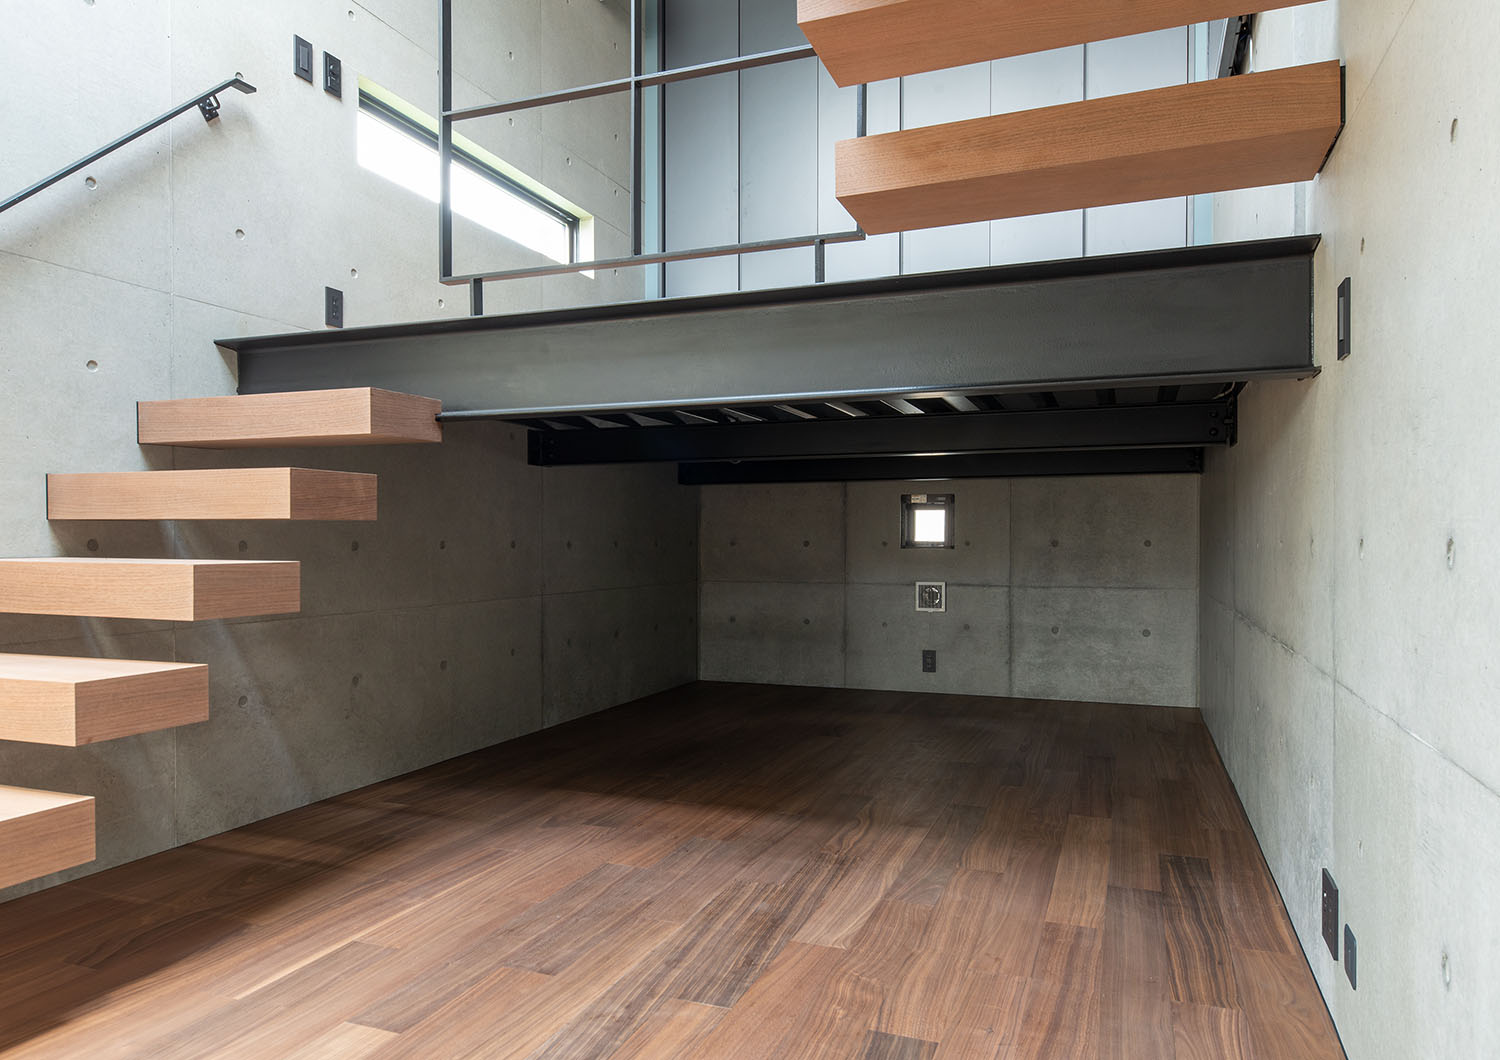 木製の浮いているような階段がスキップフロアを繋いでいるLDK・デザイン住宅